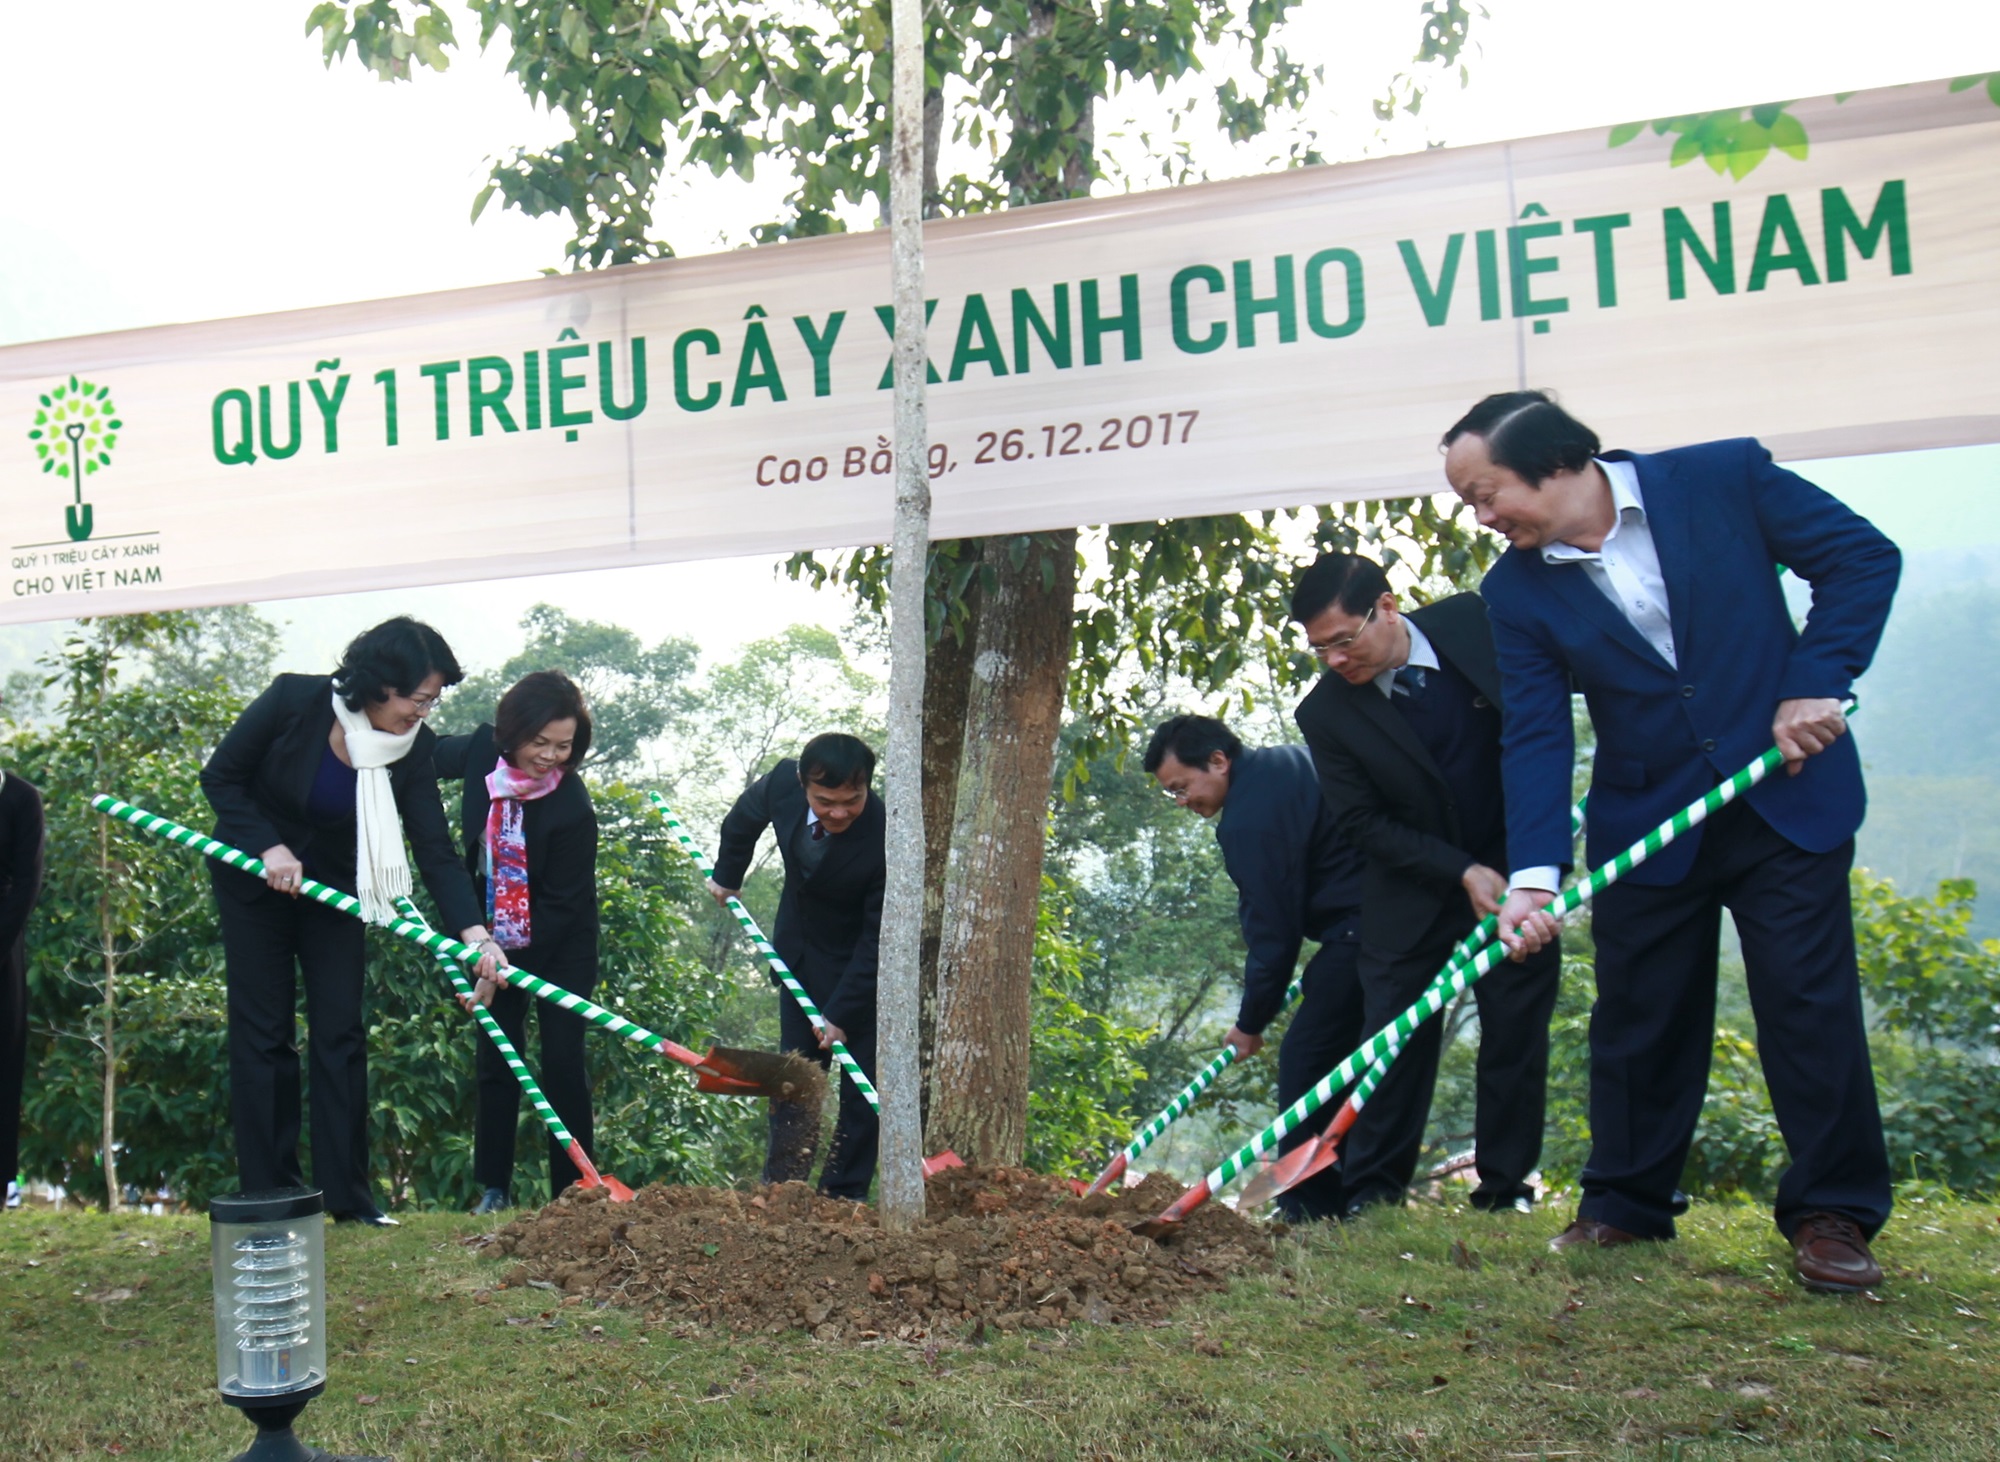 Vinamilk trao tặng hơn 80.700 cây xanh tại tỉnh Cao Bằng, ngoài trồng tại Khu di tích Quốc gia Pác Bó thì còn được giao cho người dân để trồng cây gây rừng.